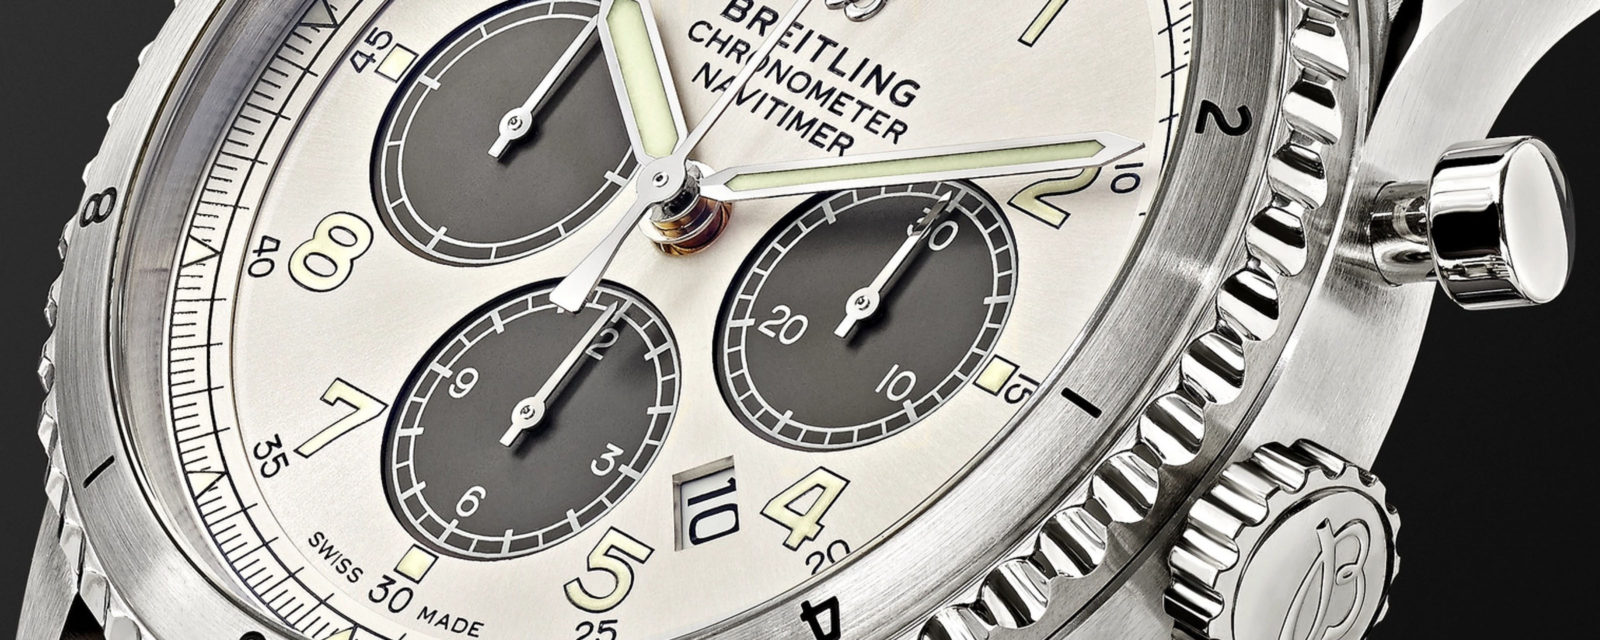 mrp-fine-watches-featured-image-1600x640.jpg